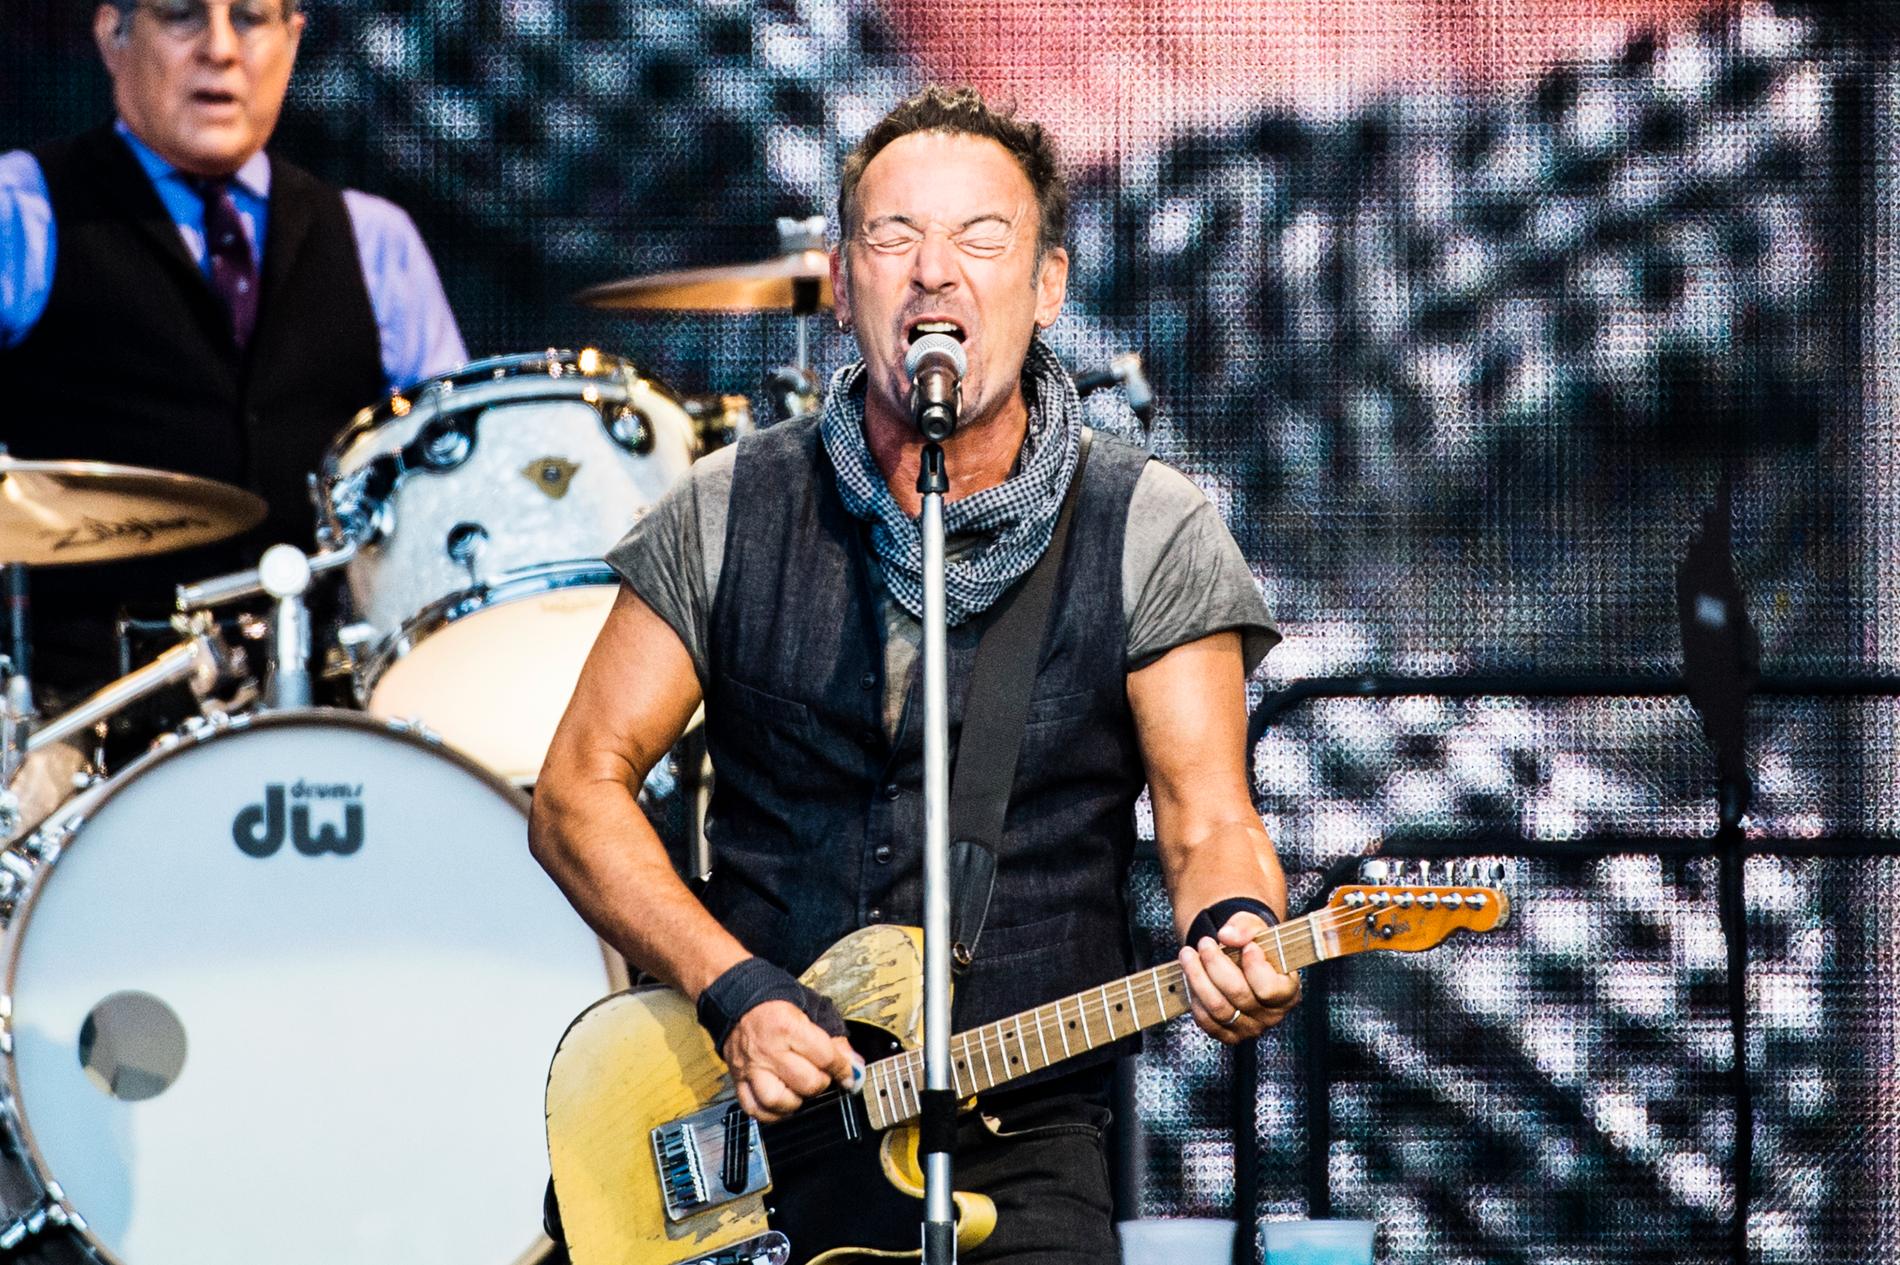 Springsteen på Ullevi